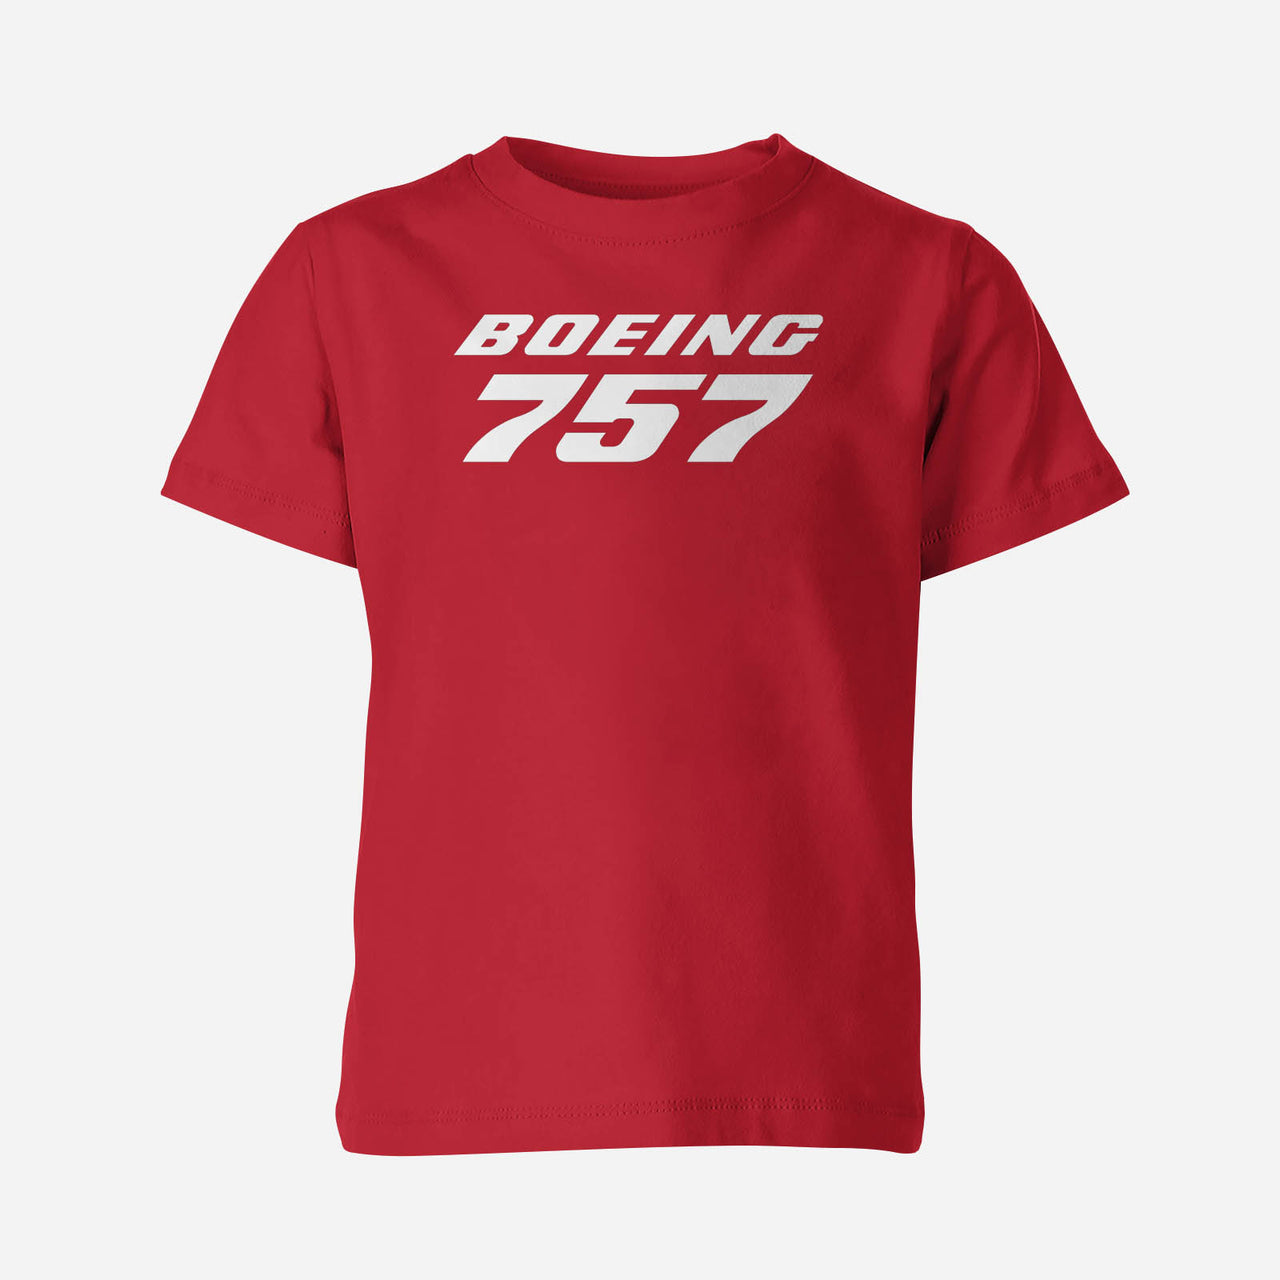 Boeing 757 & Text Designed Children T-Shirts